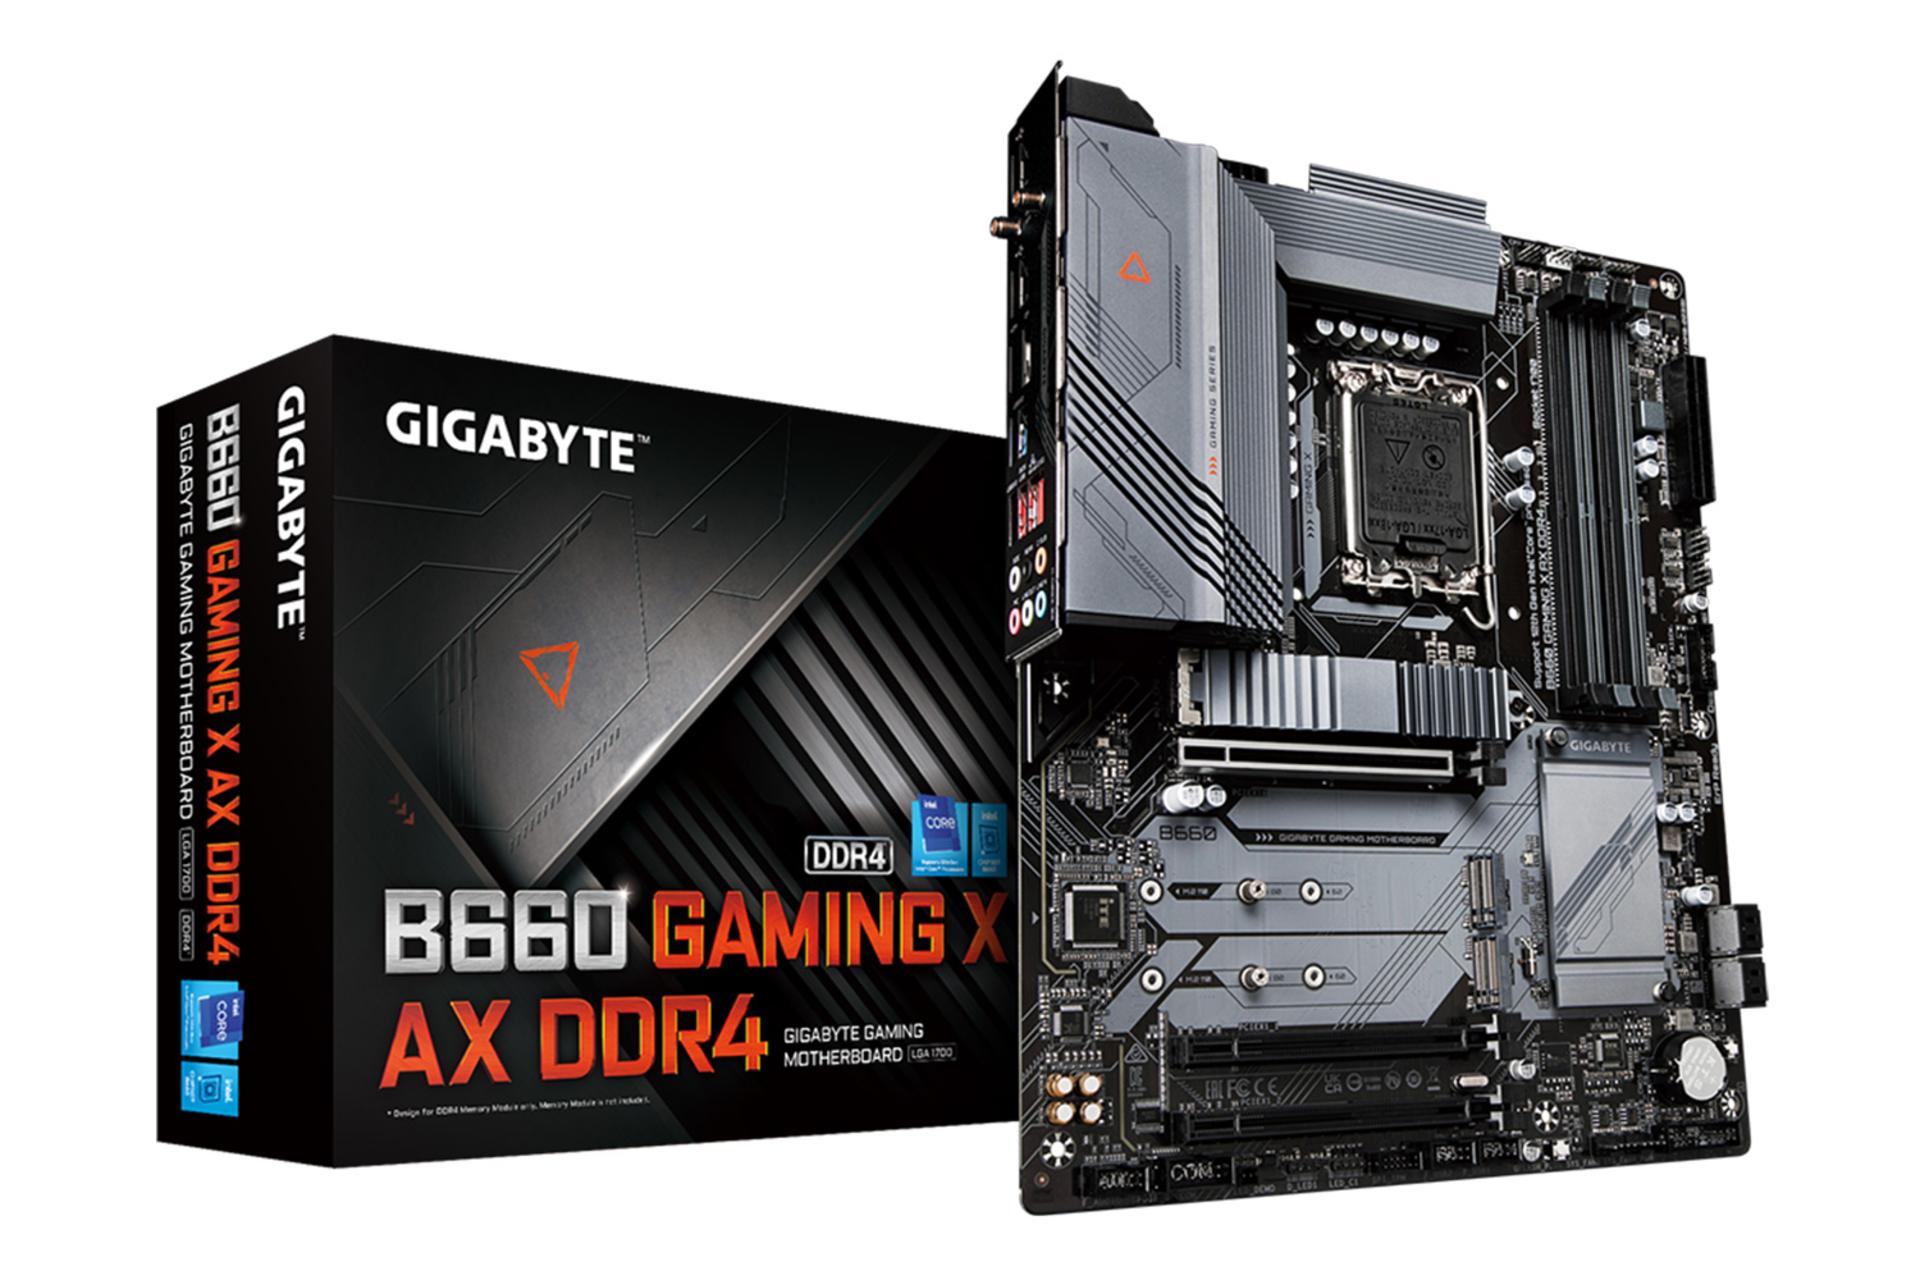 جعبه مادربرد گیگابایت GIGABYTE B660 GAMING X AX DDR4 (rev. 1.0)